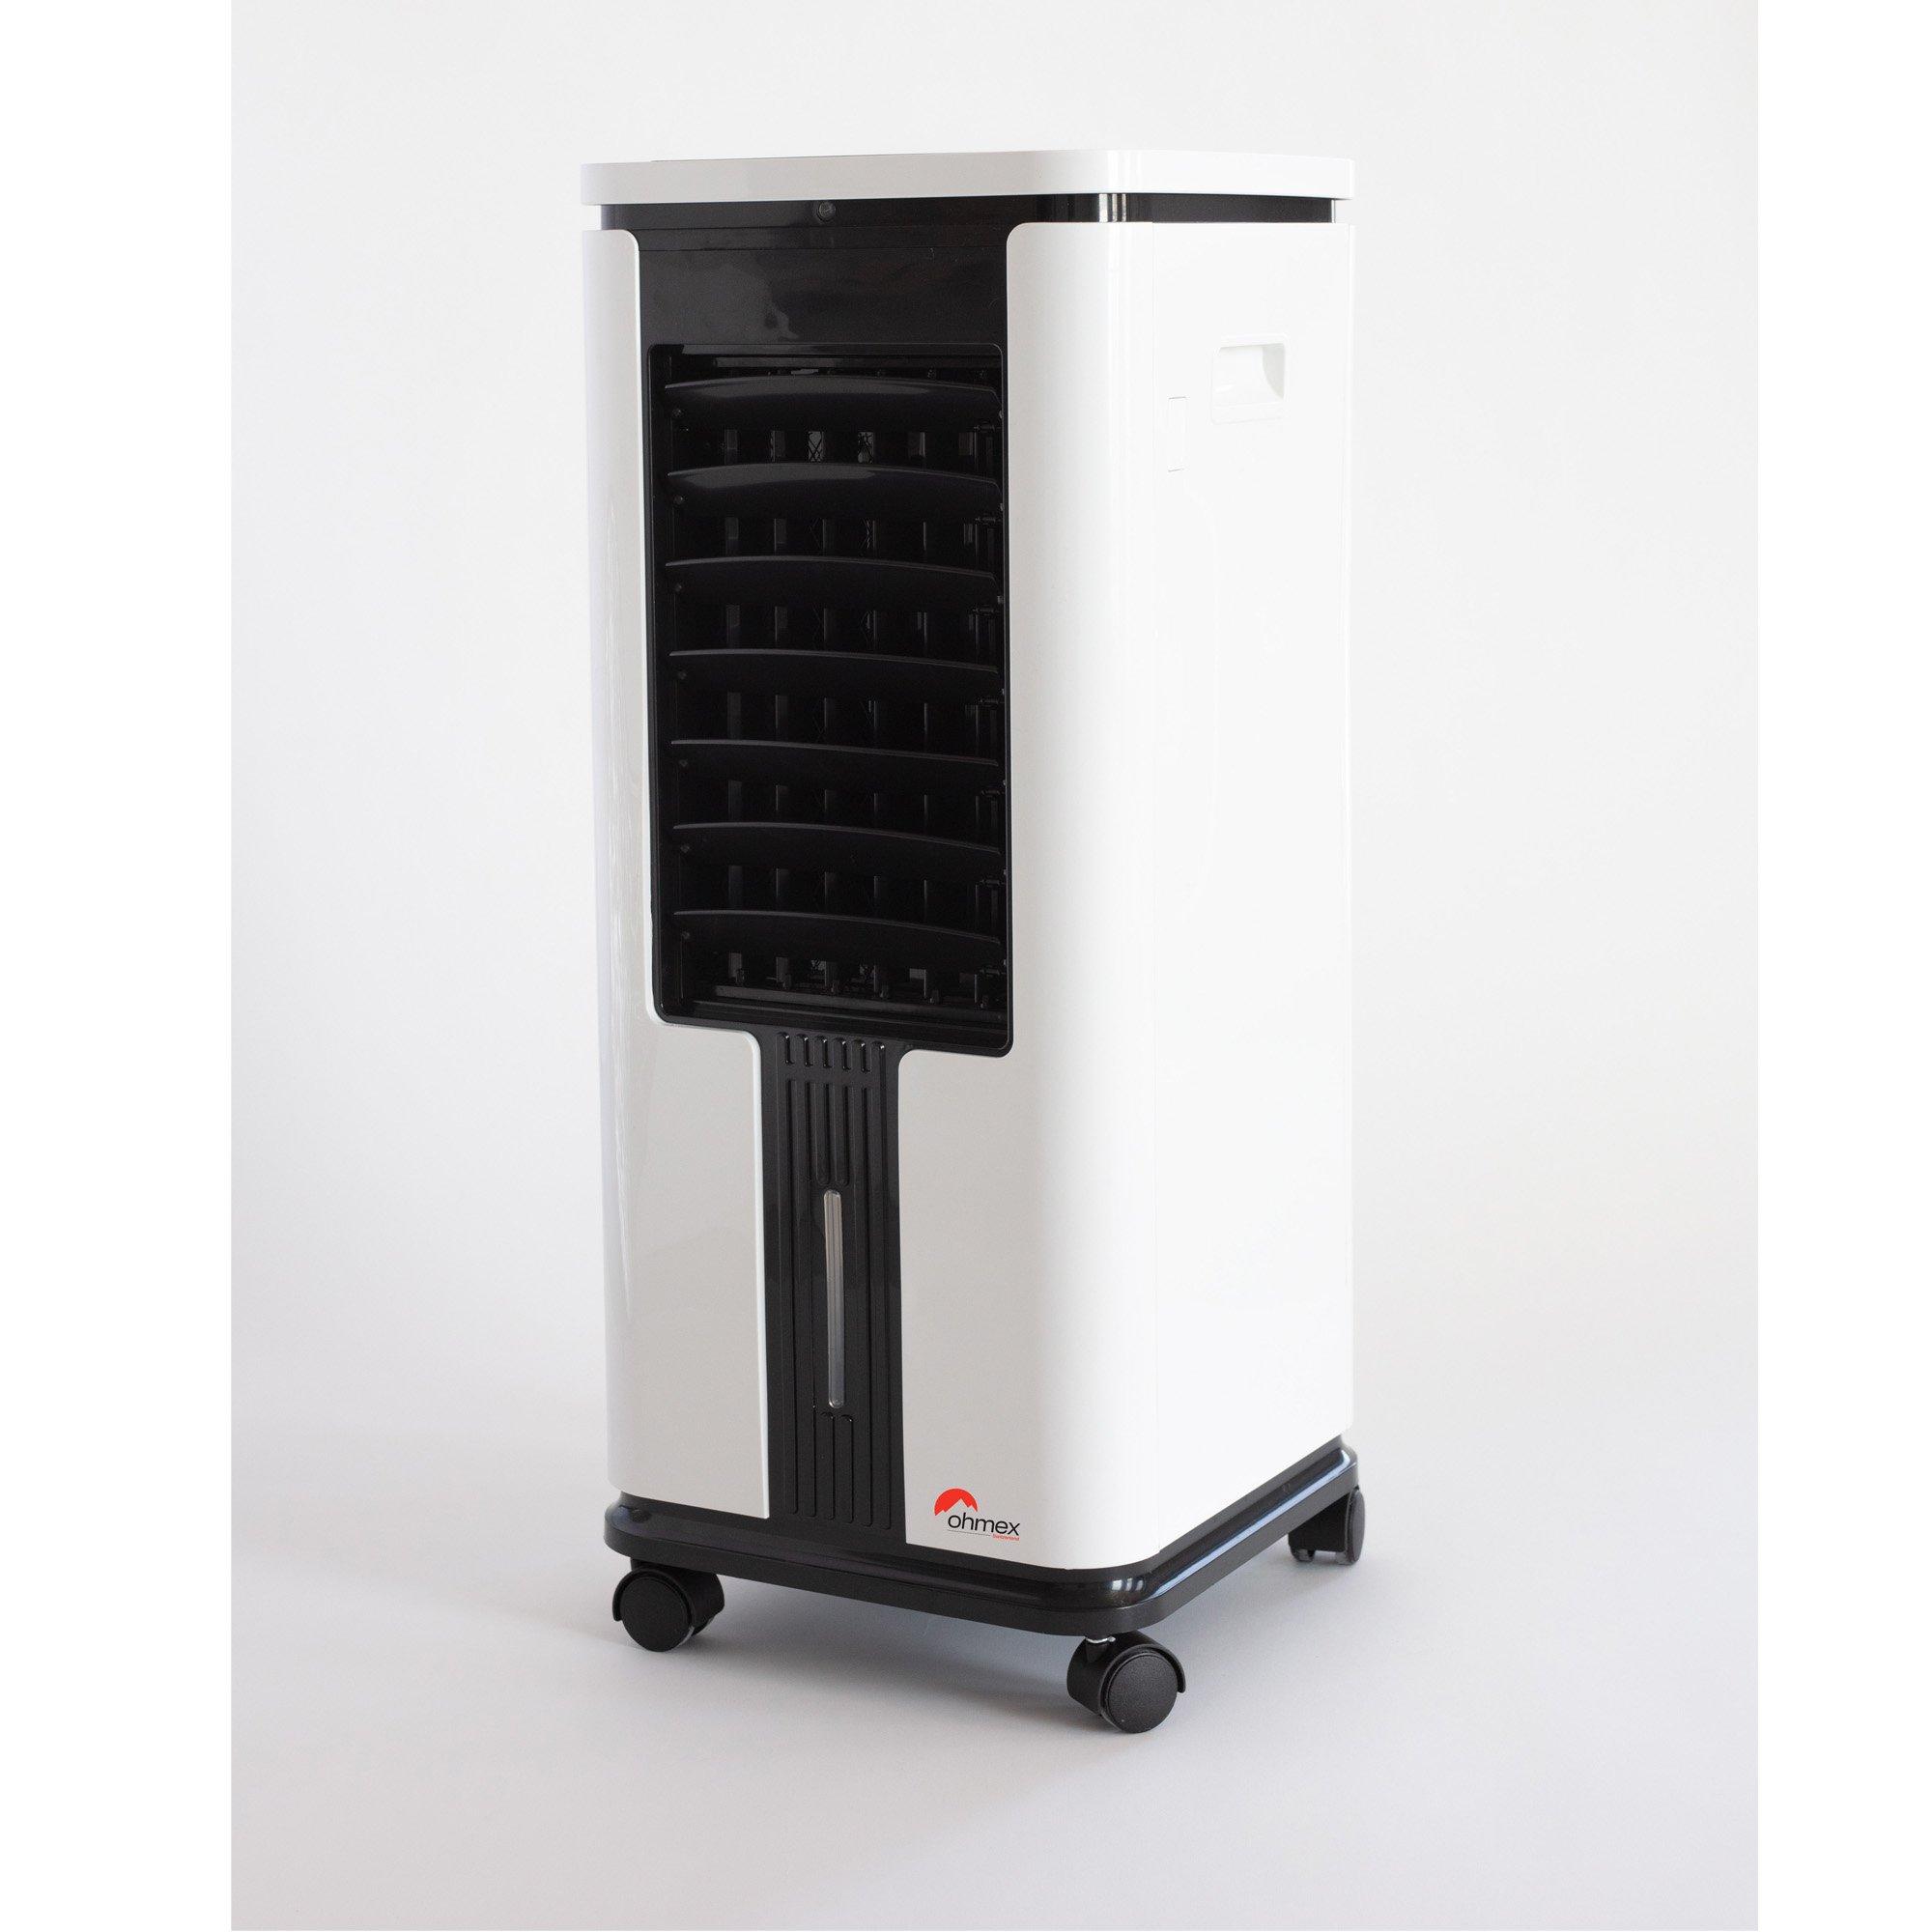 Ohmex Refroidisseur d'air Evaporative Air Cooler 